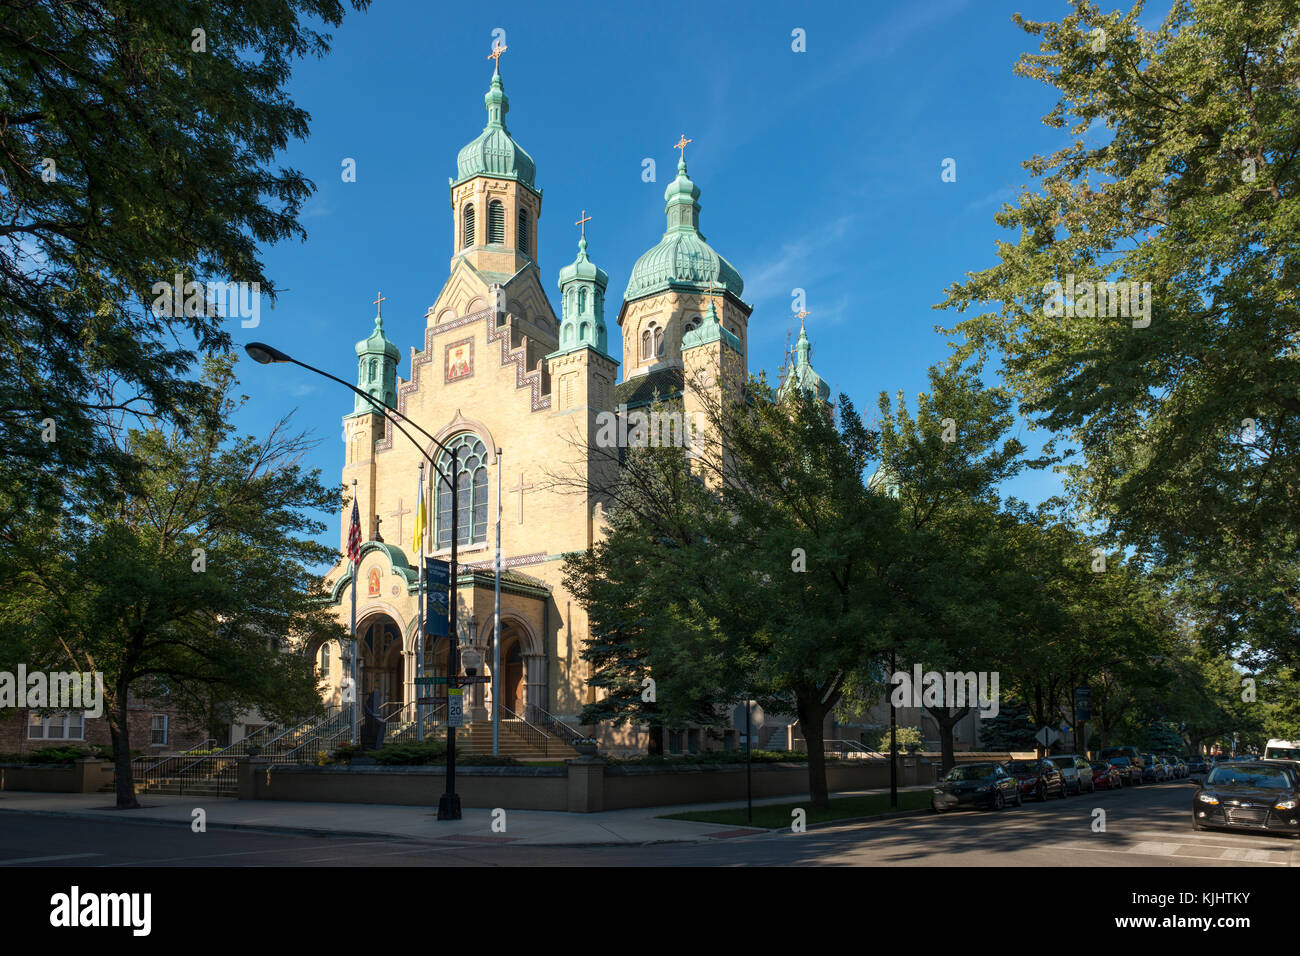 Saint Nicholas church à Chicago Ukrainian Village est un exemple de style architectural byzantin-slave. Banque D'Images